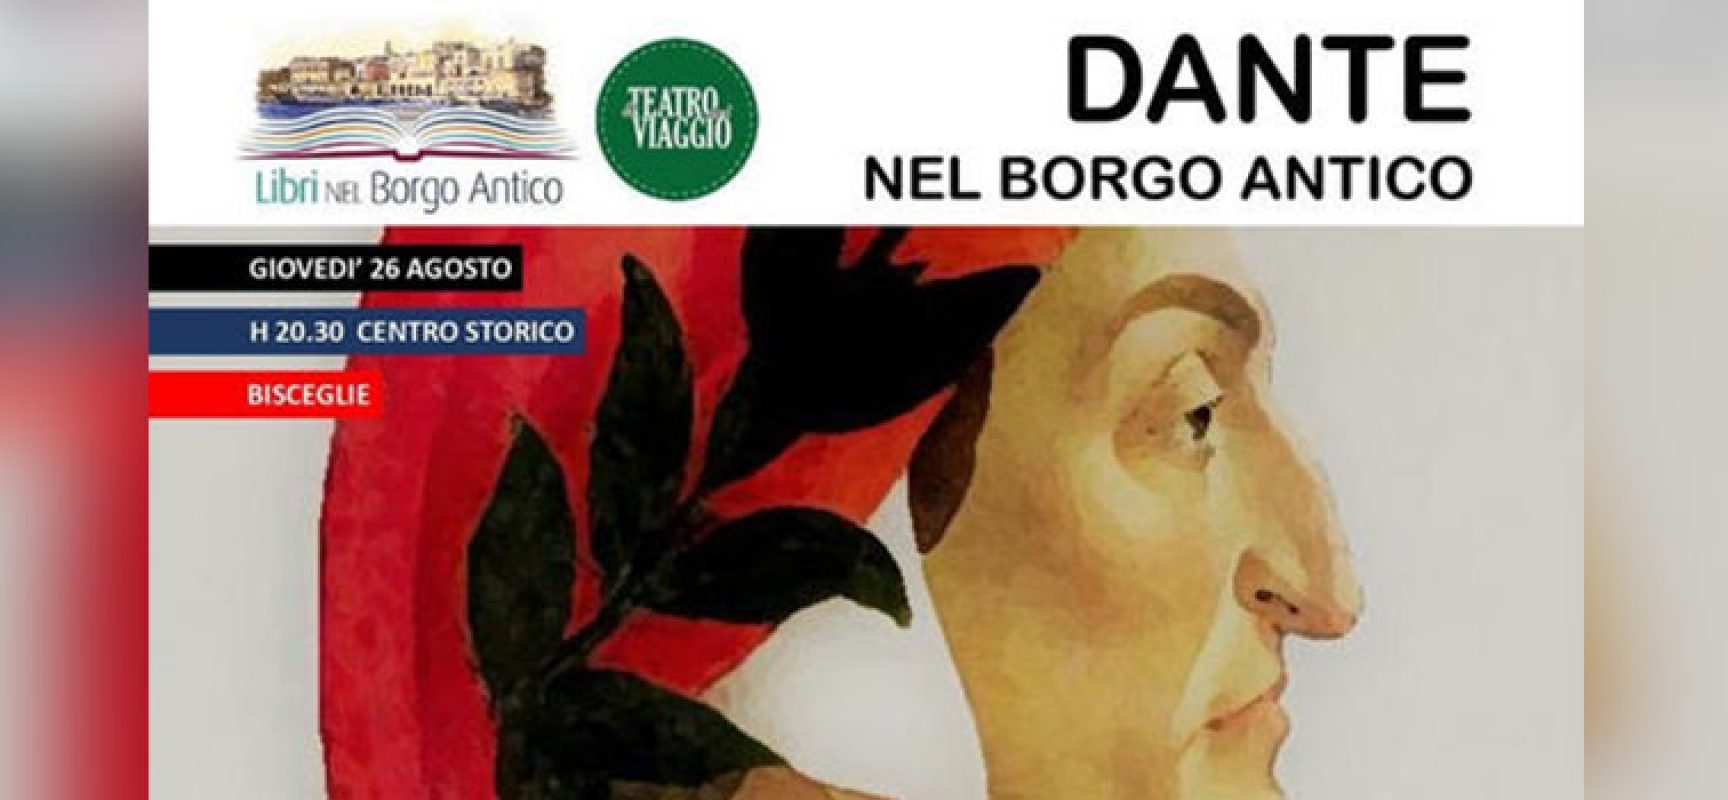 Al via “Libri nel Borgo Antico”, si parte con uno spettacolo itinerante dedicato a Dante